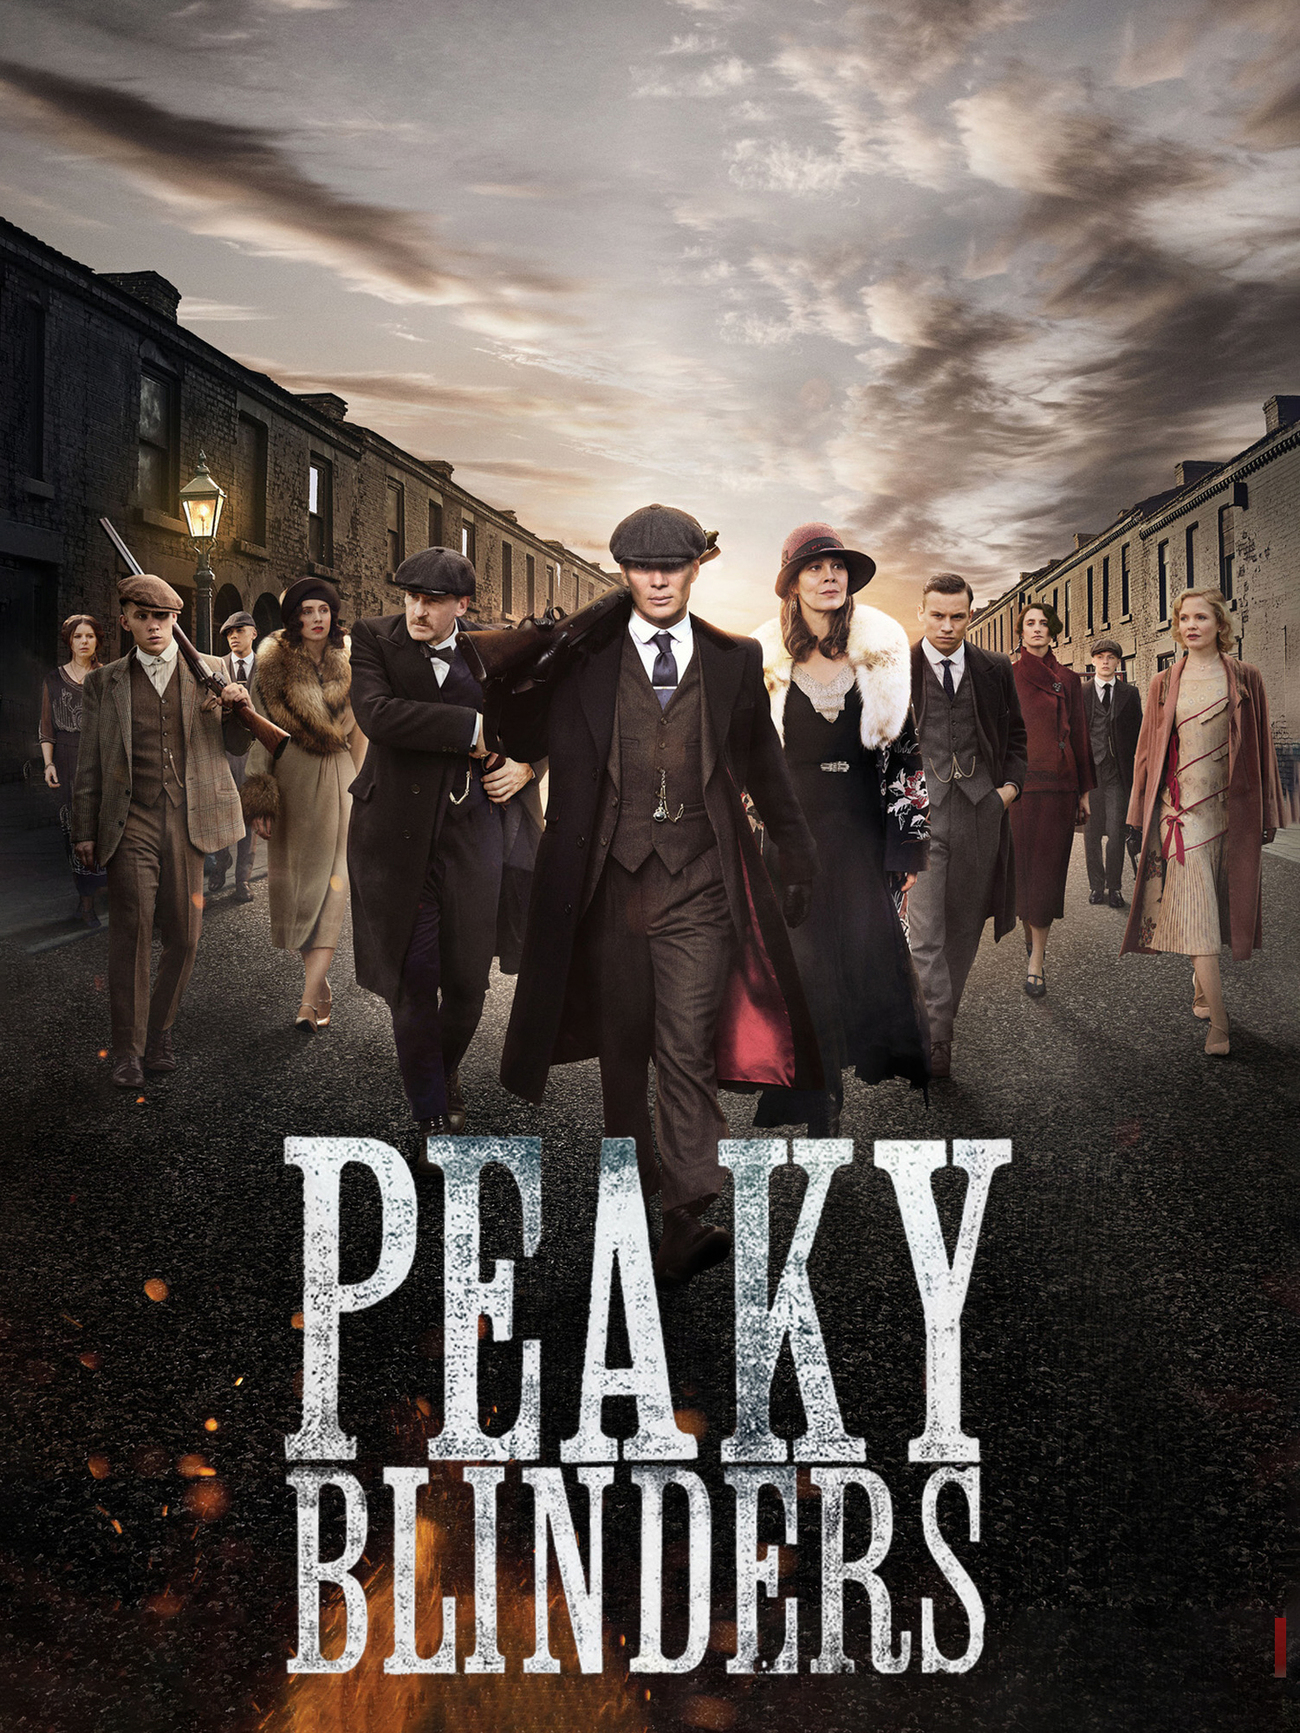 Peaky Blinders (TV series) - Wikipedia